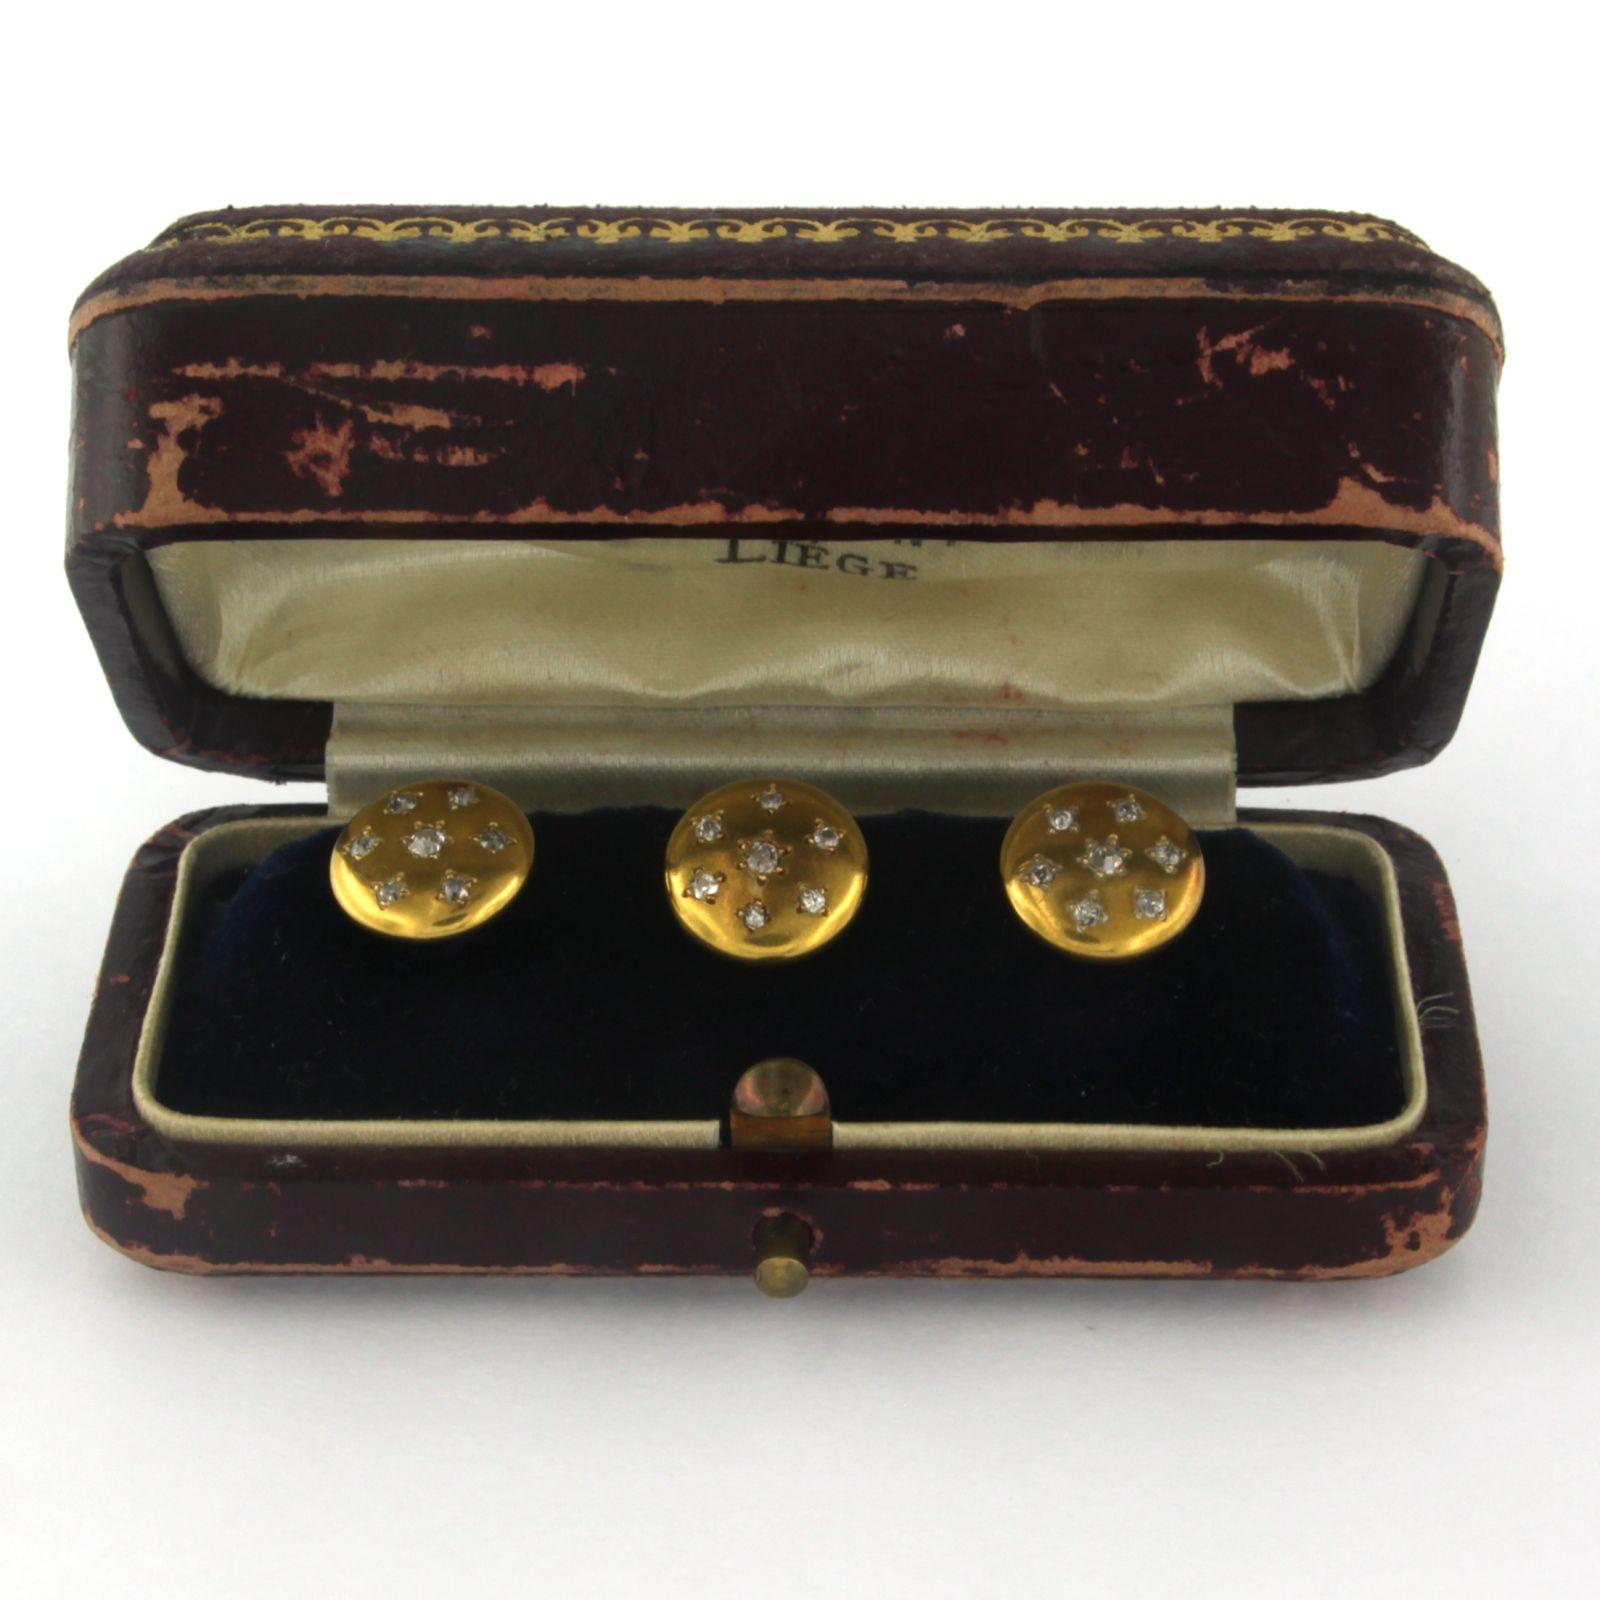 Lot de 3 boutons sertis d'un diamant taille ancienne 0,30 ct, dans un écrin authentique

description détaillée

le sommet d'un bouton de forage mesure 1,0 cm, le dos a un diamètre de 7,6 mm

Poids total 5,8 grammes

mettre avec

- 21 x 1,3 mm - 2,0